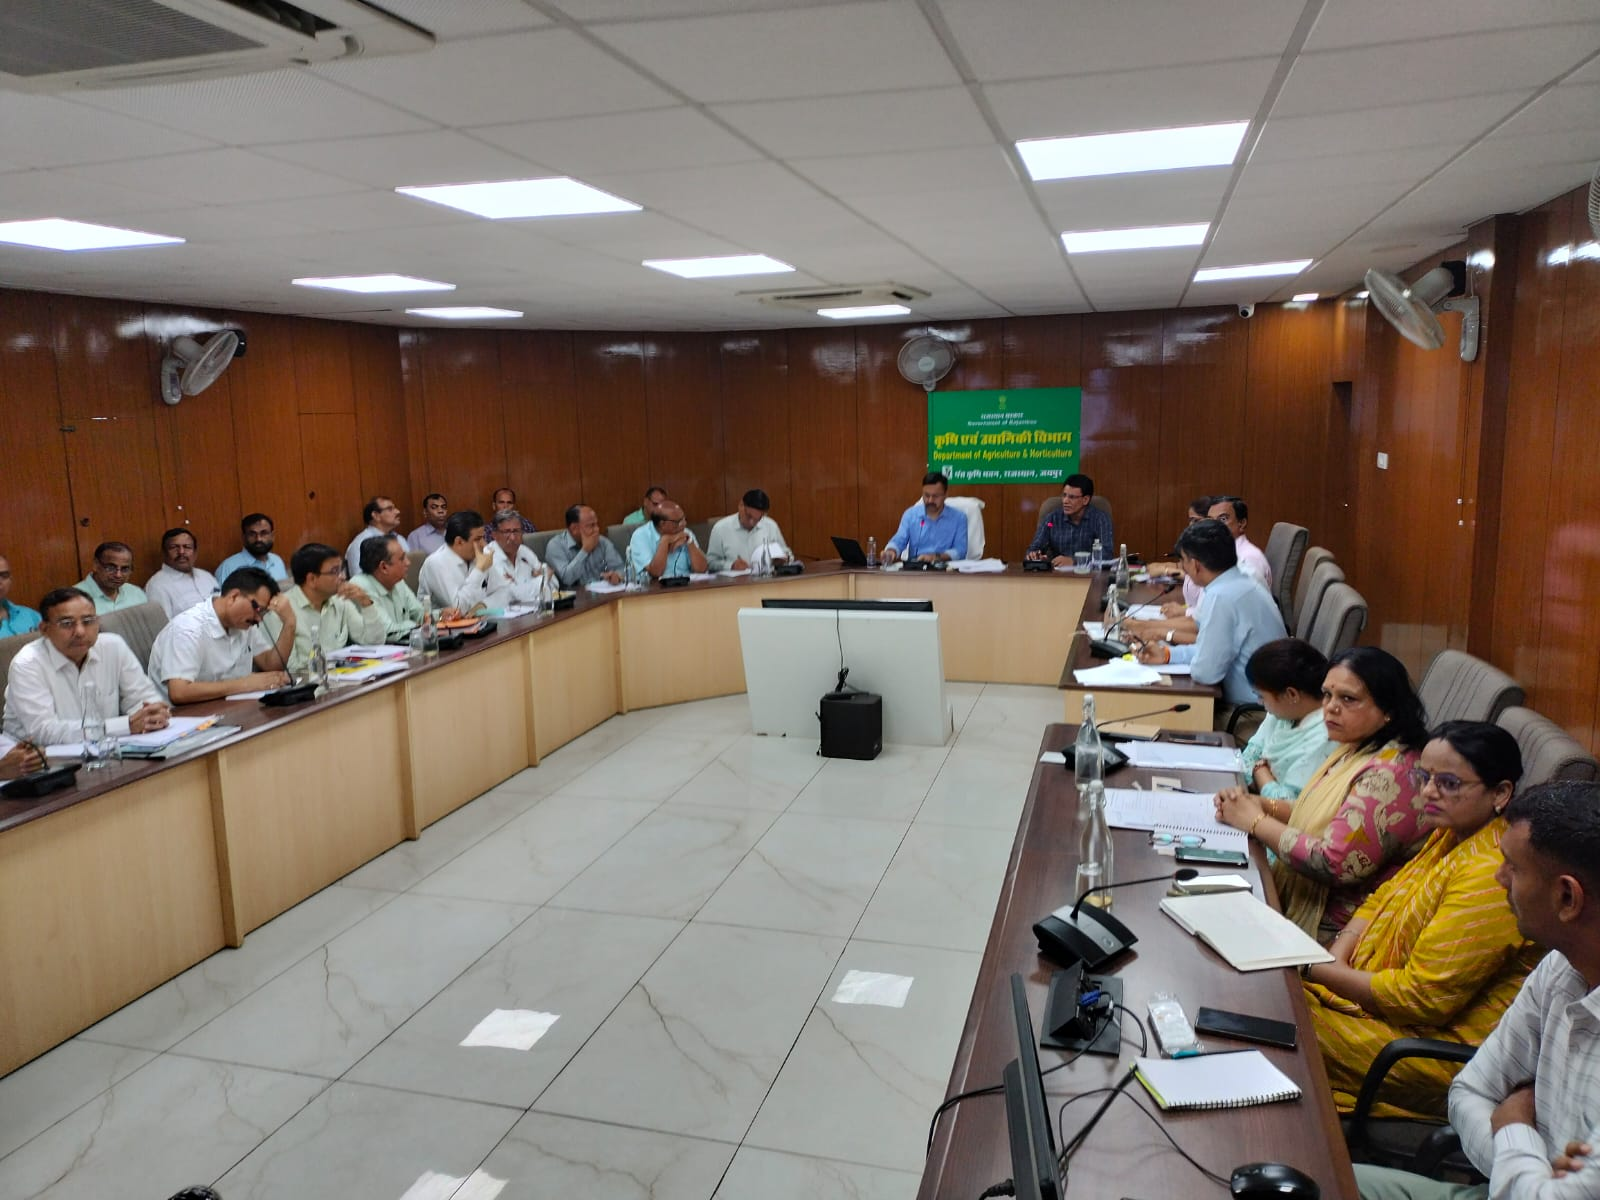 राजस्थान राज्य कृषि विपणन विभाग व विपणन बोर्ड की योजनाओं की समीक्षा बैठक का आयोजन